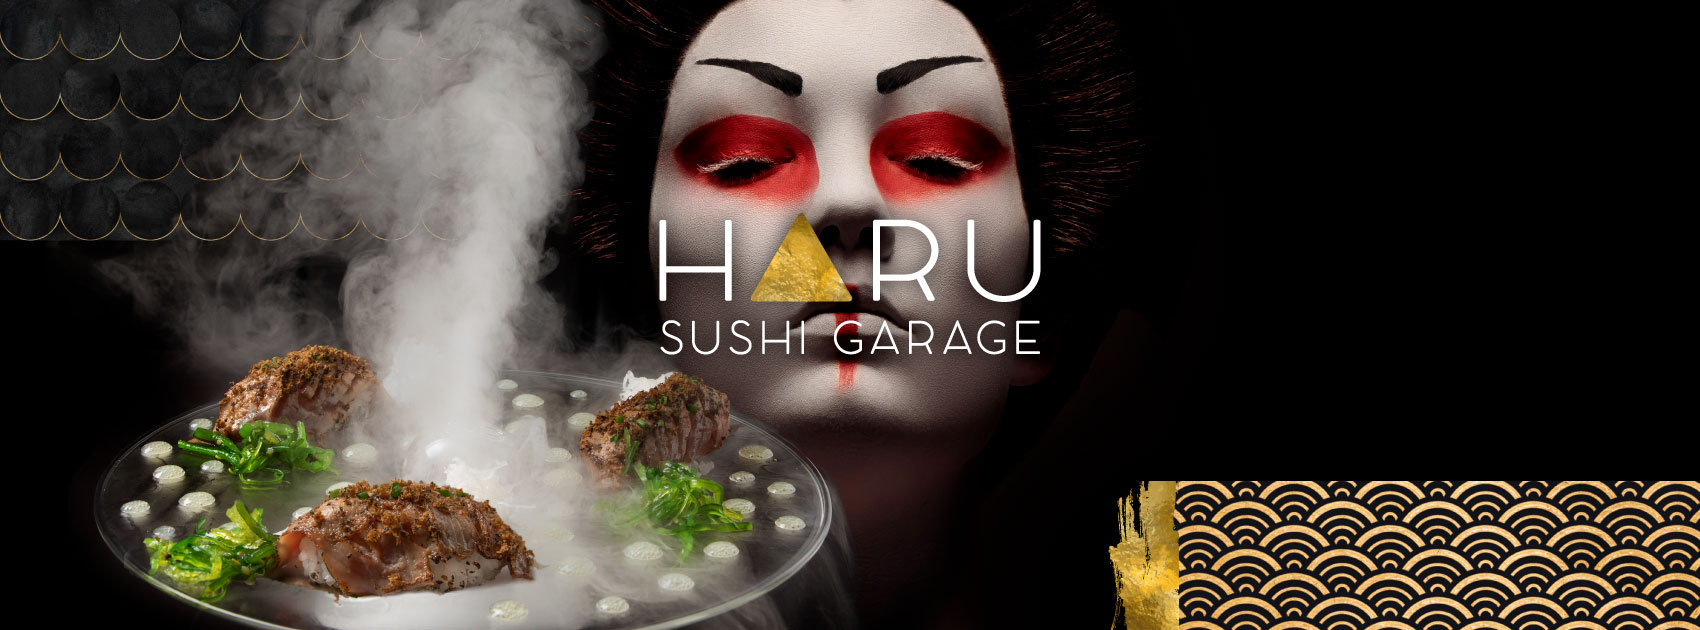 Haru Sushi Garage